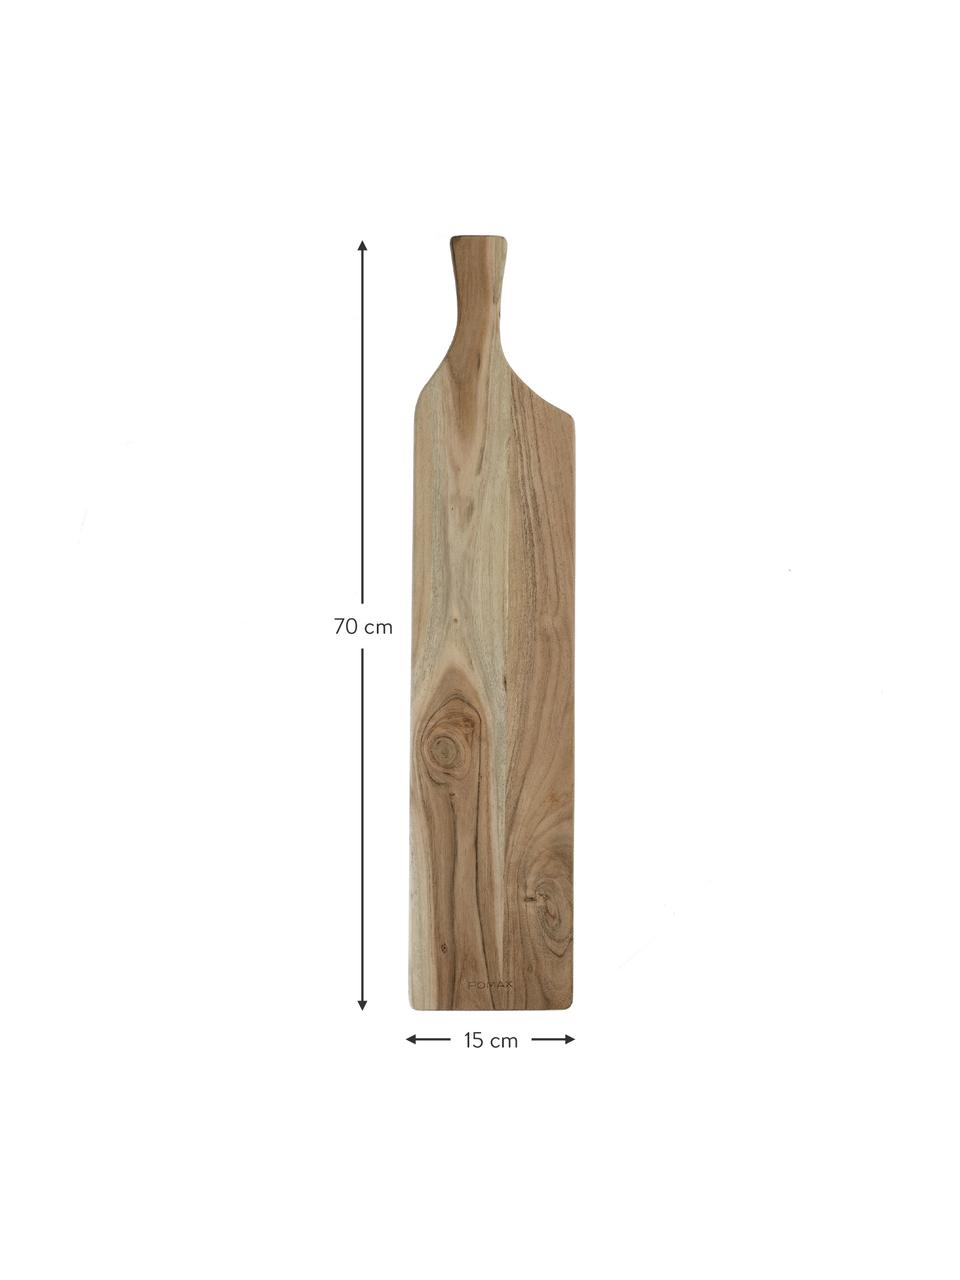 Prkénko z akátového dřeva Limitless, D 70 cm x Š 15 cm, Akátové dřevo, Akátové dřevo, D 70 cm, Š 15 cm